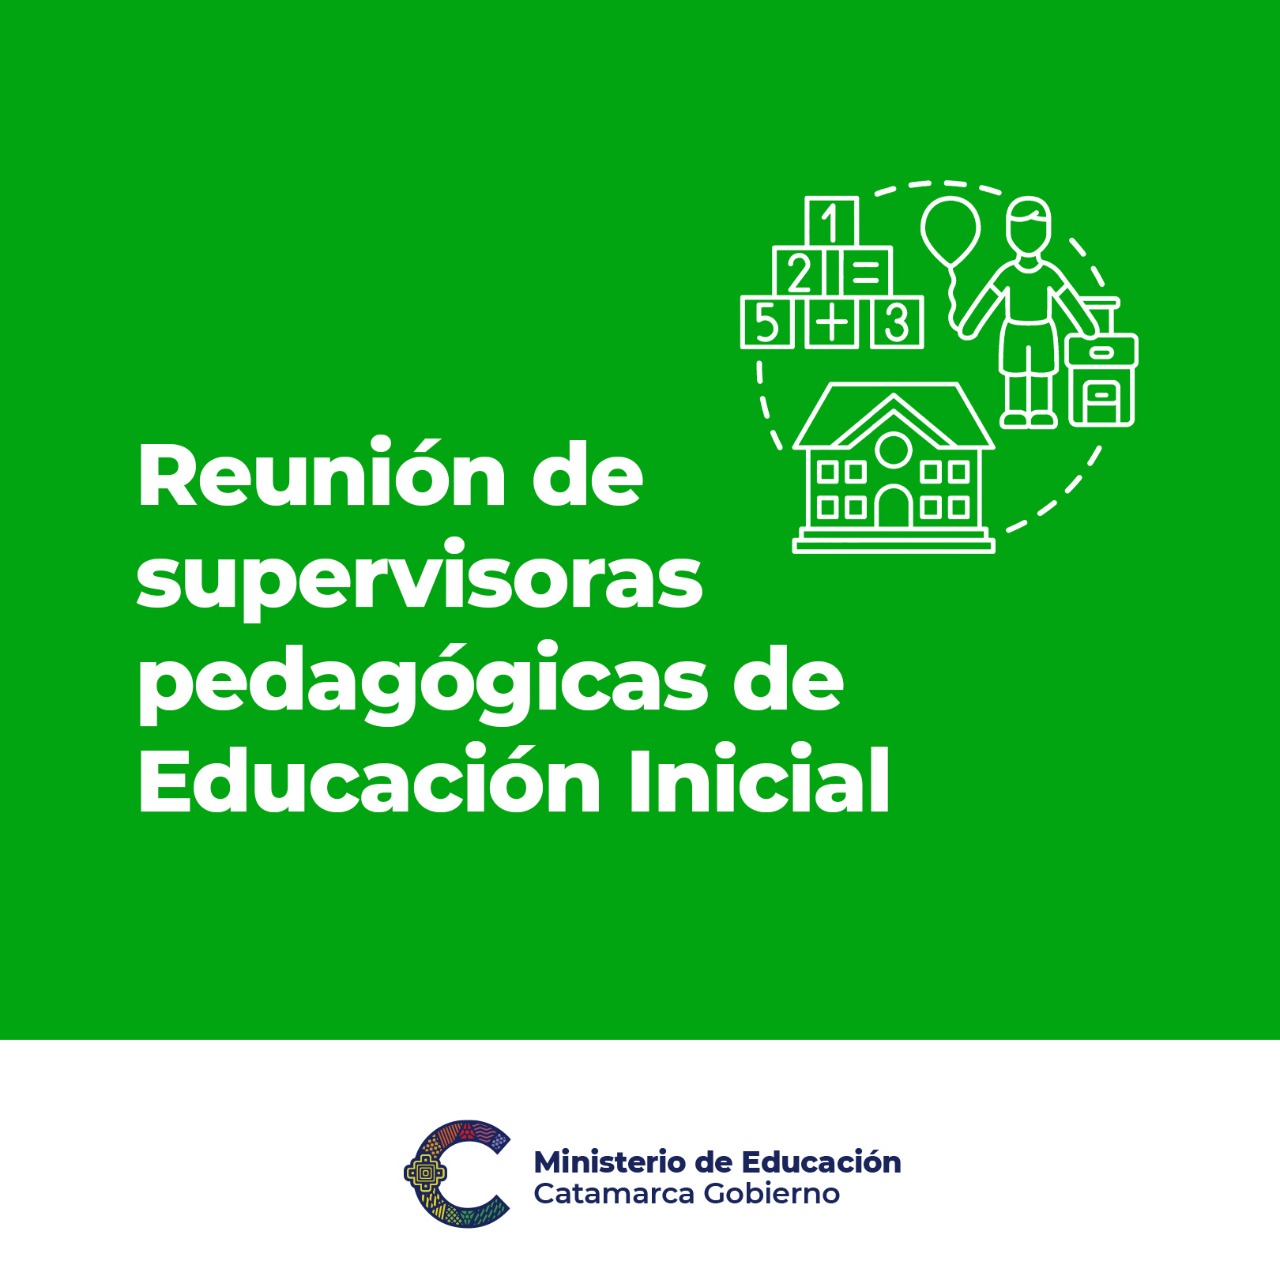 Reunion de supervisoras pedagogicas de Educacion Inicial